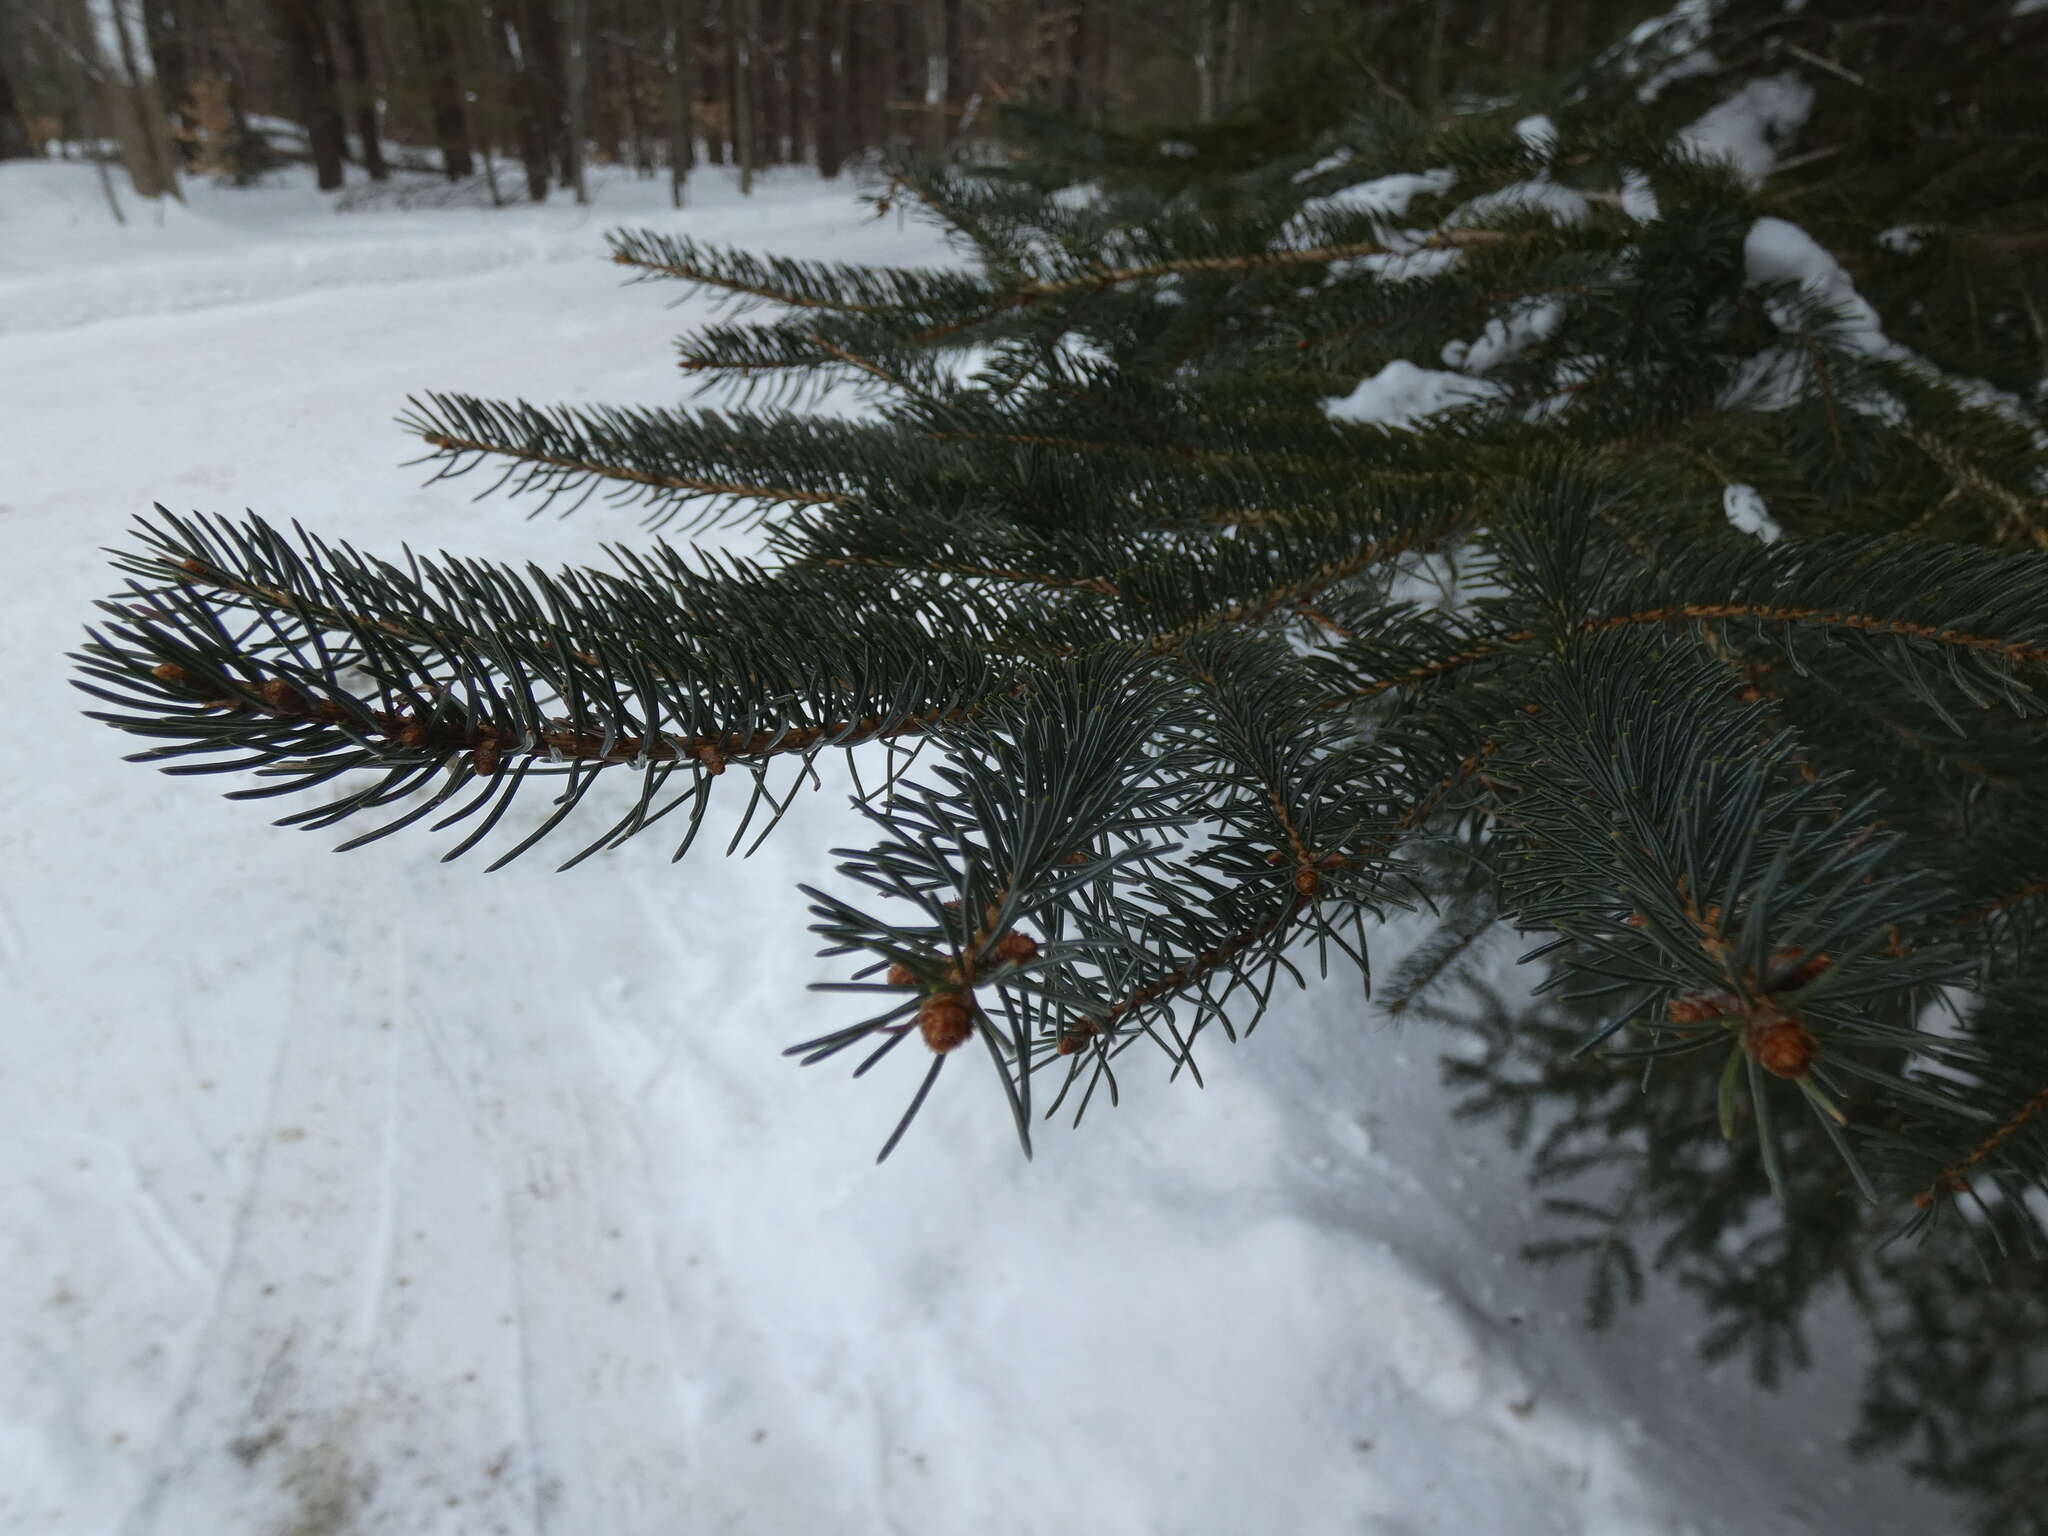 Image of balsam fir